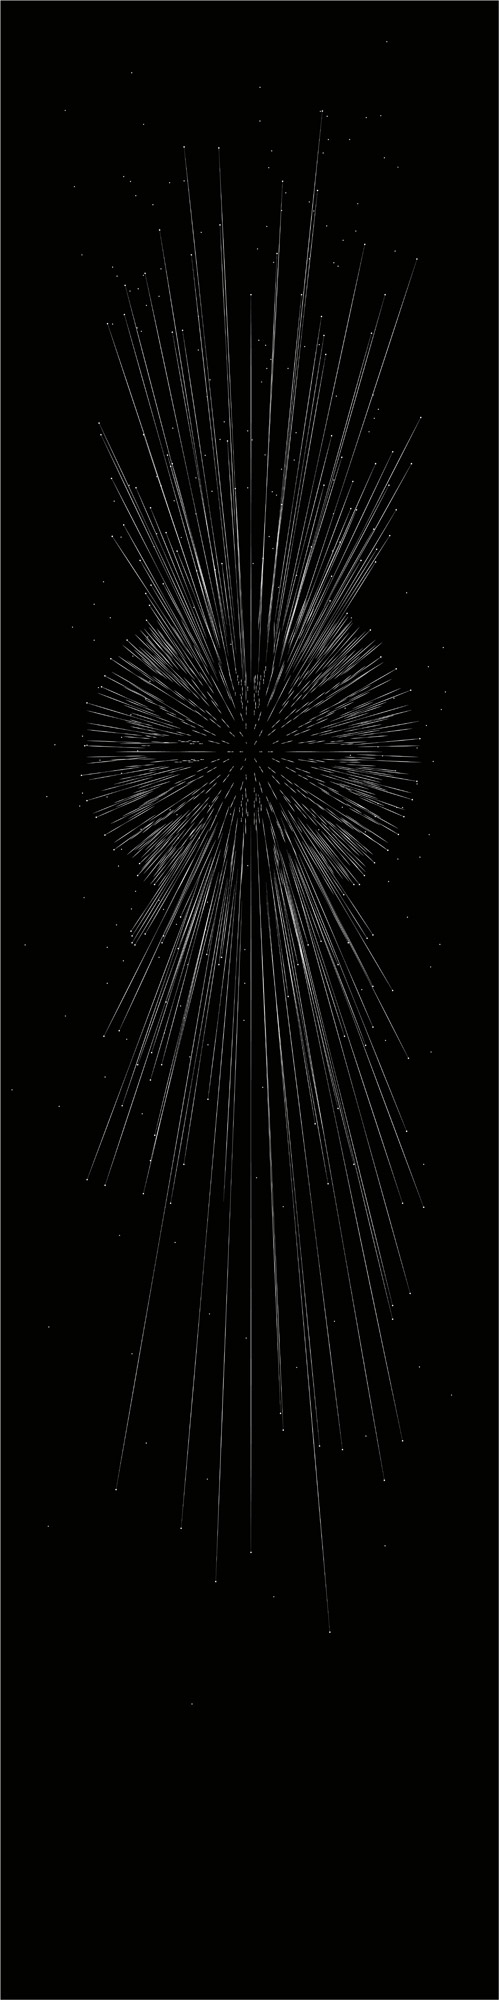 François Ronsiaux, Apophis Meteorit, Impression numérique sur béton Ductal noir, 2m x 1m.